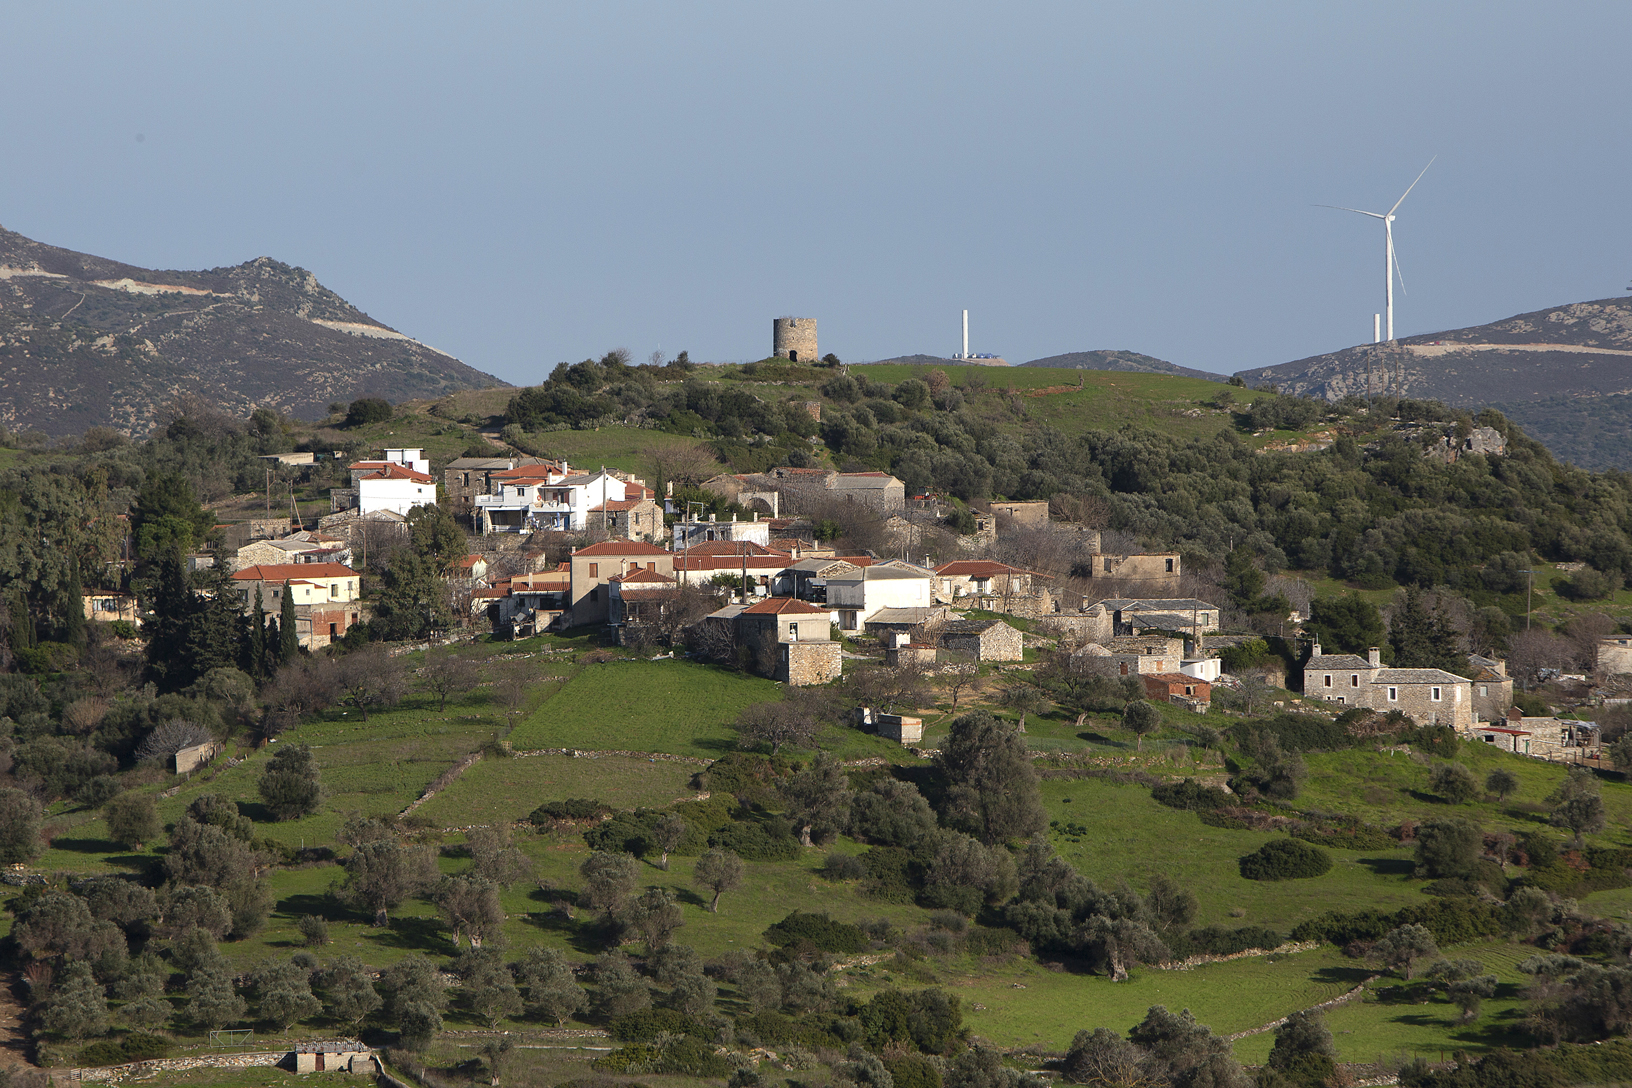 Χωριό Δύστος, Άνω Μαχαλάς. Φωτογραφία: ©Βασίλης Συκάς, για τον Δήμο Κύμης-Αλιβερίου